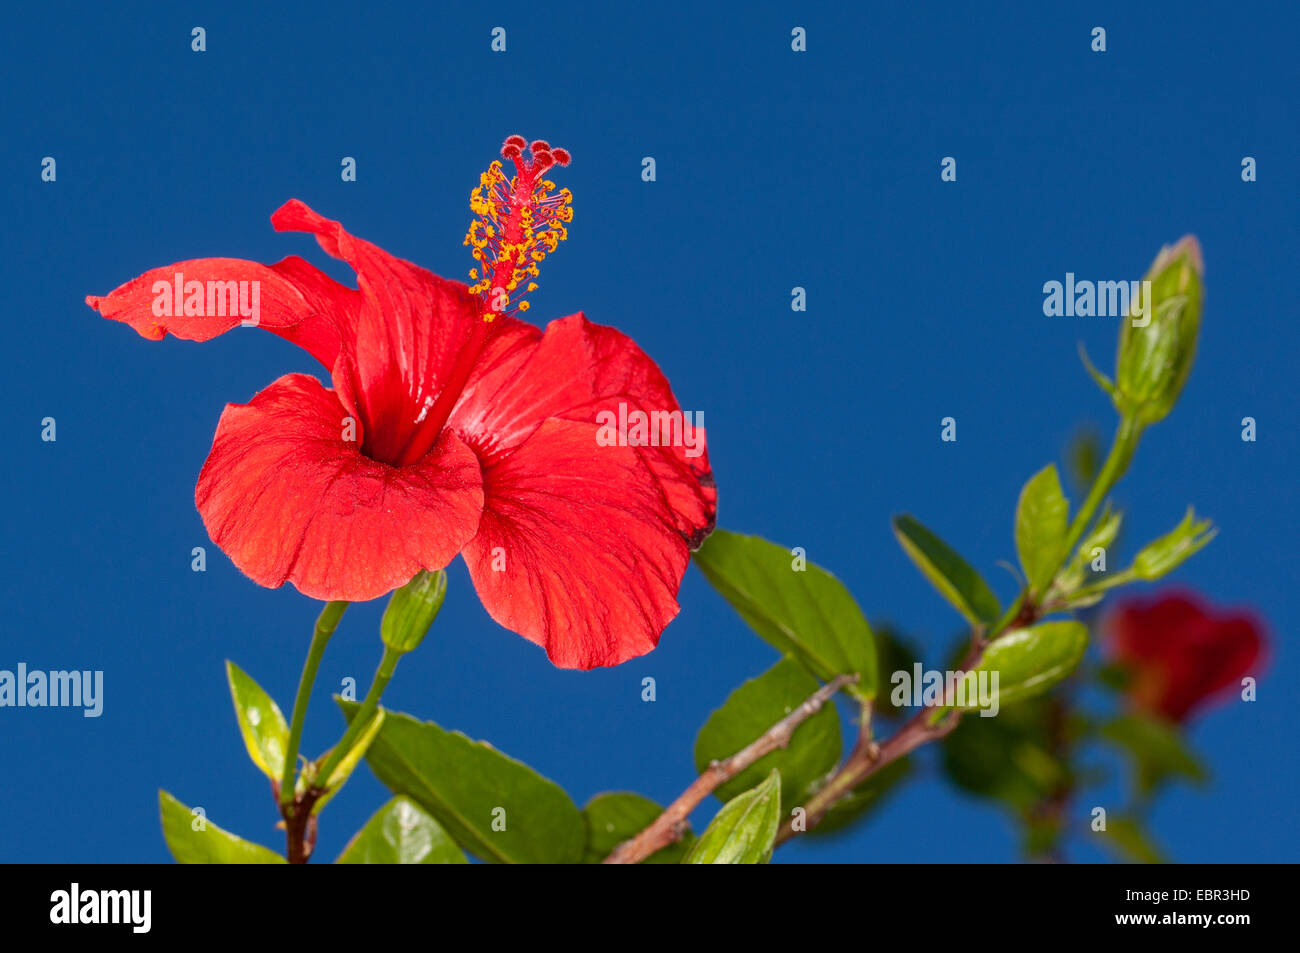 Hibiscus (Hibiscus chinois rosa-sinensis), fleur contre fond bleu Banque D'Images